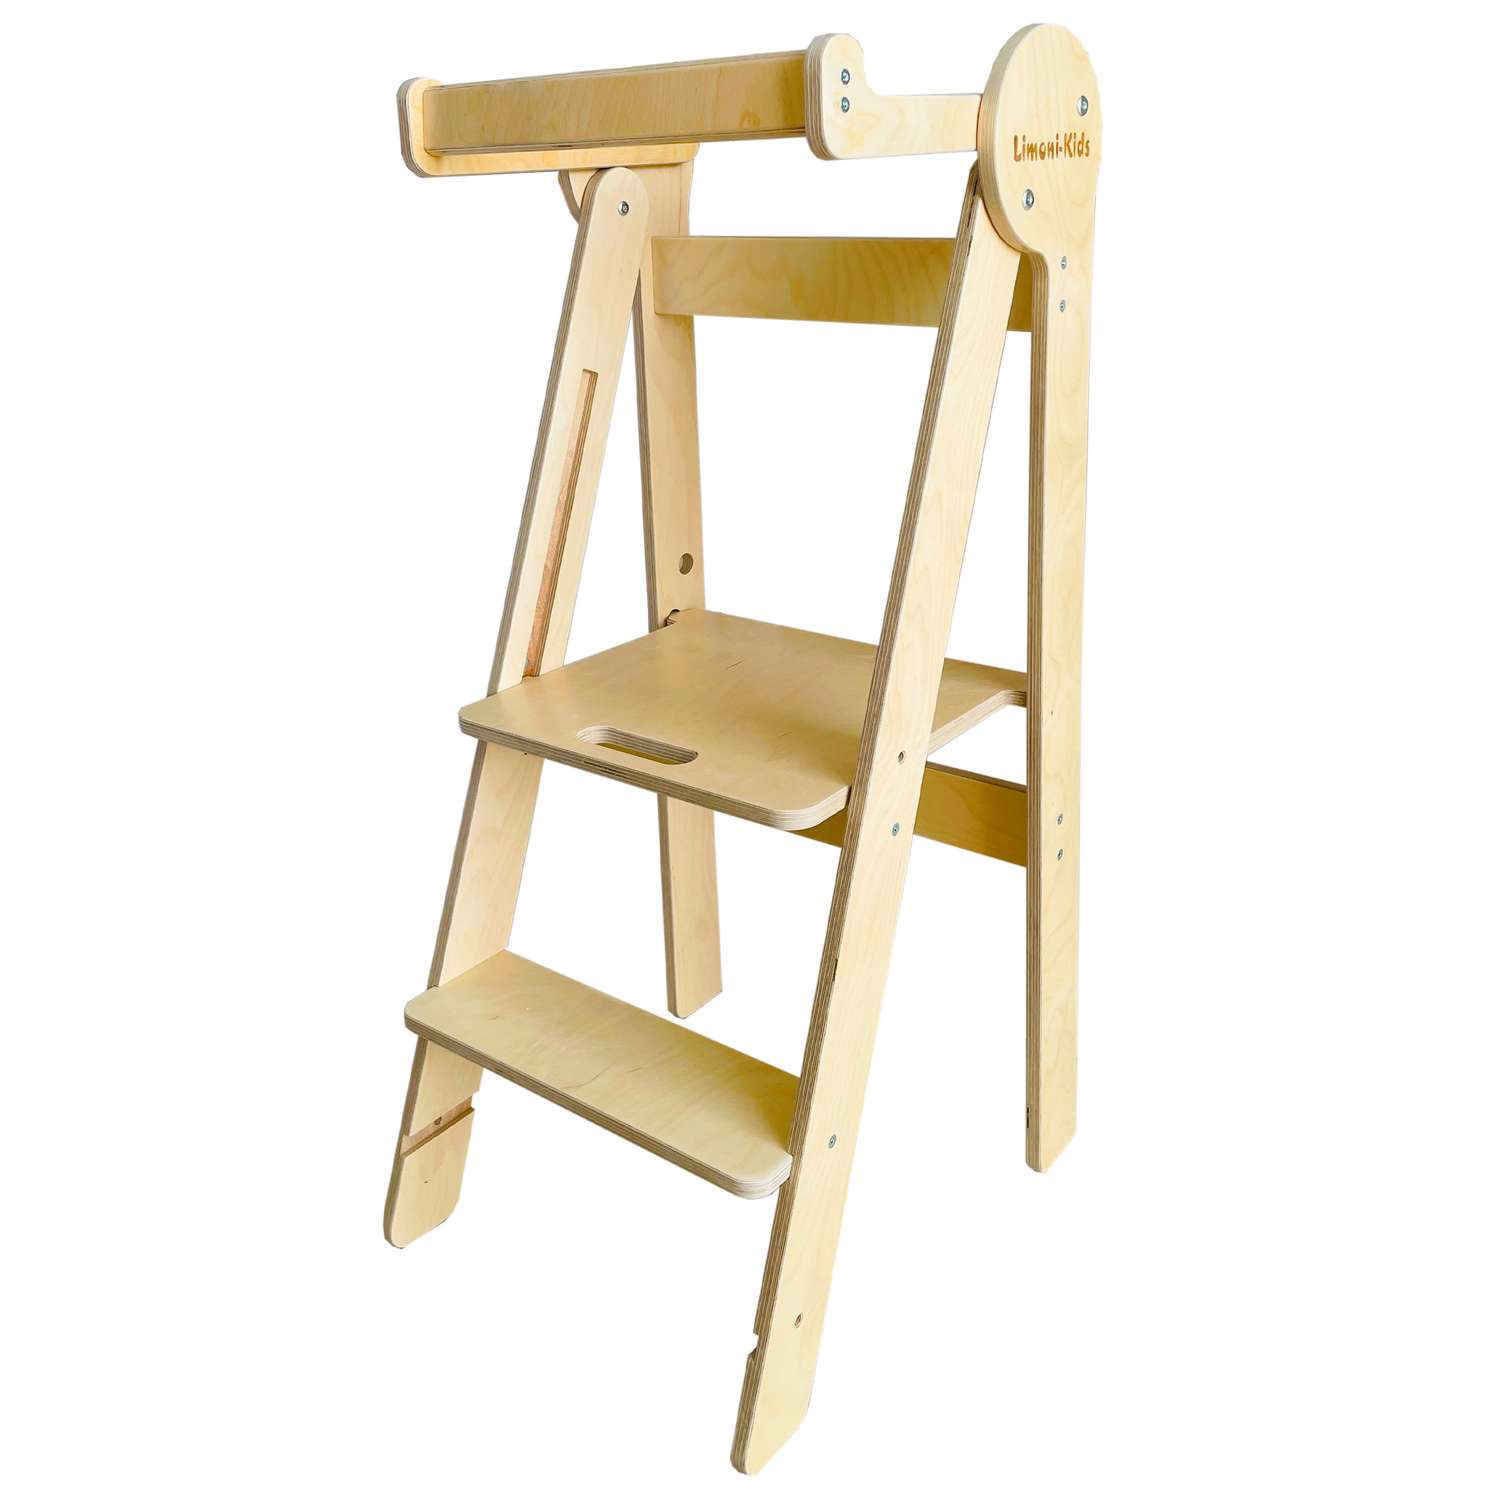 Башня помощника Limoni-Kids Регулируемый по высоте стул - подставка для ног детская - фото 1